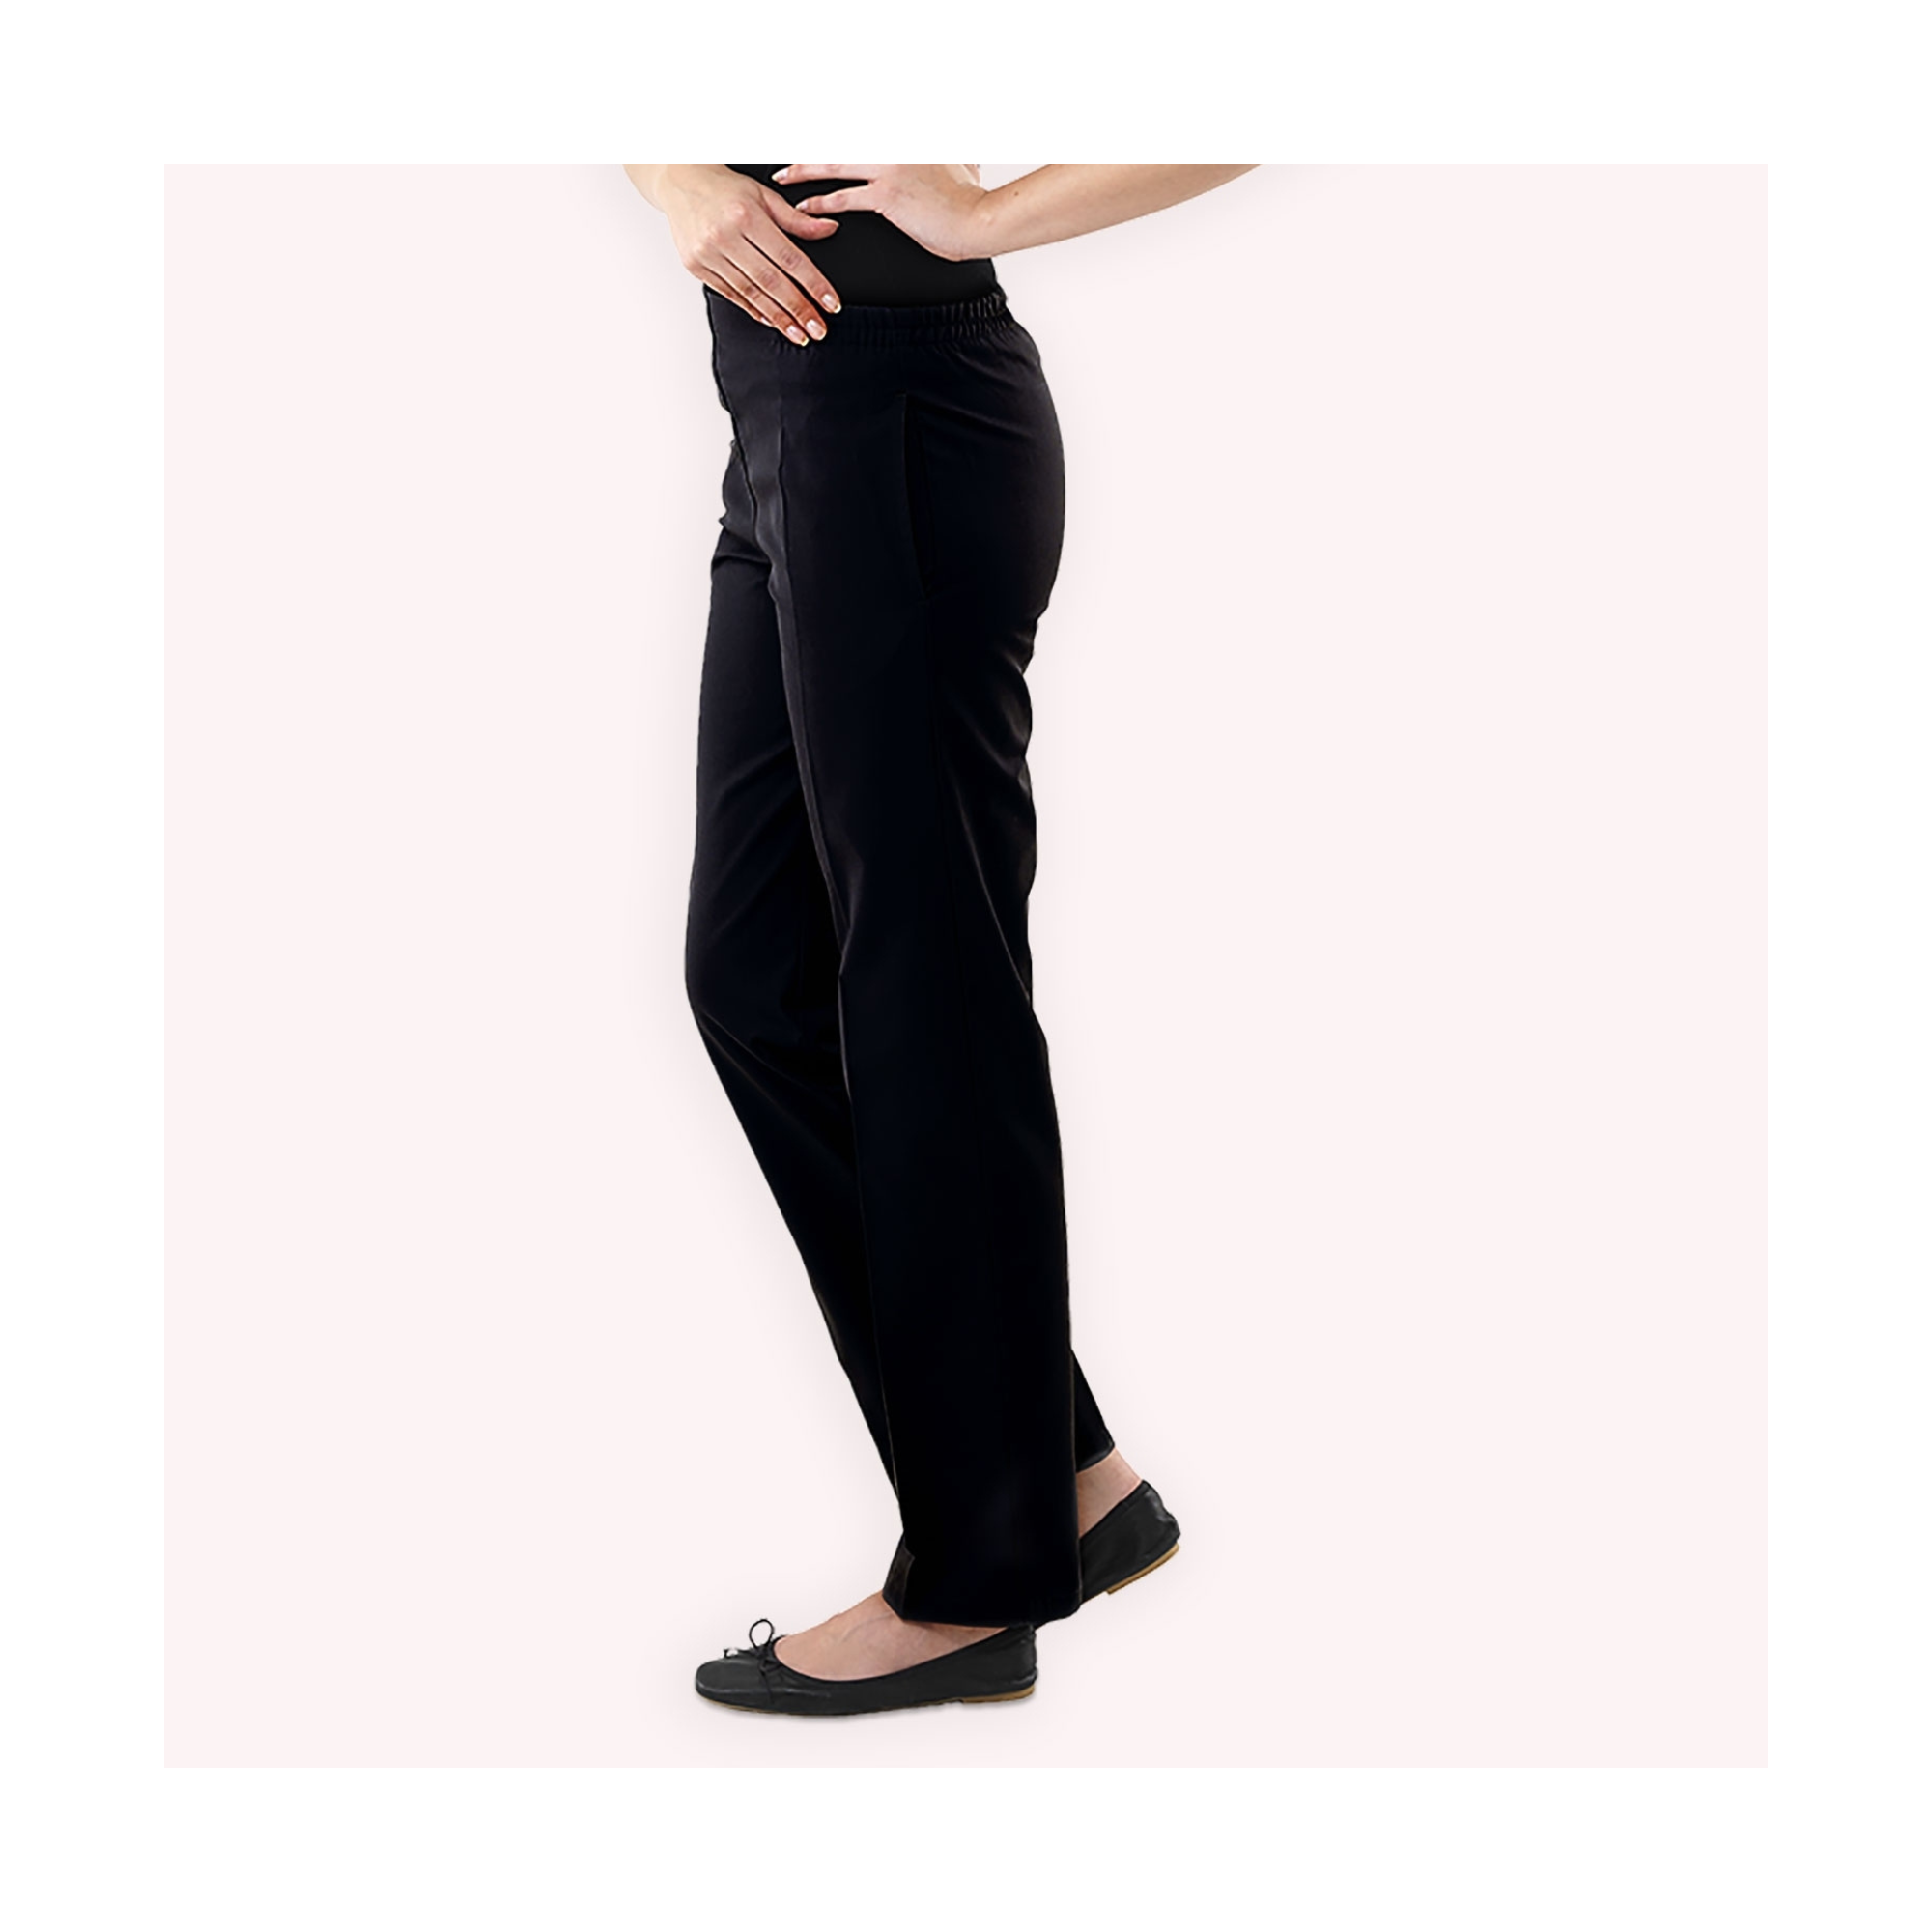 [FIN DE SERIE] Manille - Pantalon femme noir - Ceinture élastique - Sans poche - Taille 3